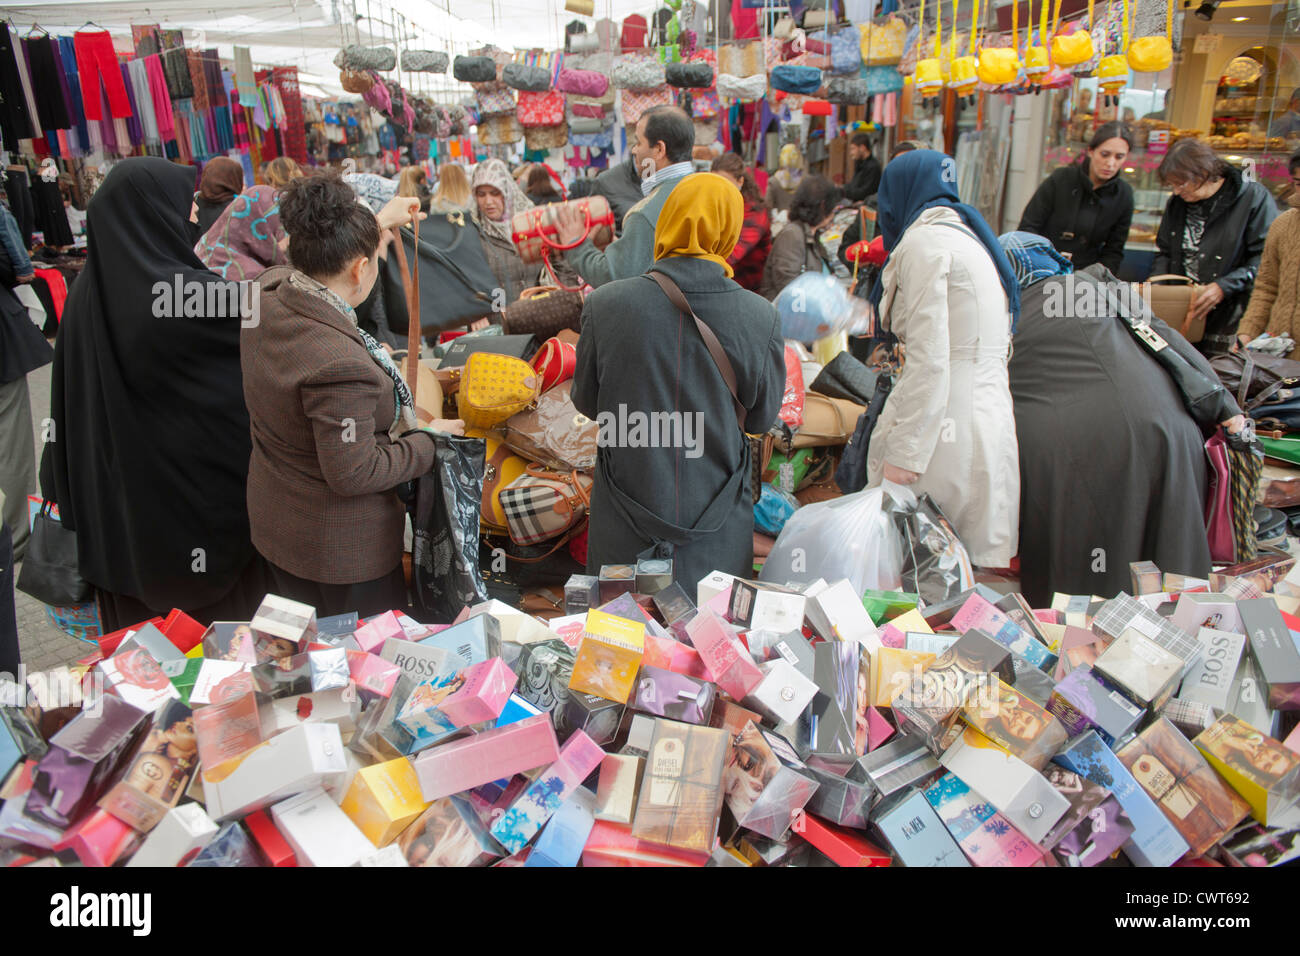 Türkei, Istanbul, Fatih, Carsamba Pazari oder Frauenmarkt, jeden Mittwoch an der Fatih-Moschee. Foto Stock